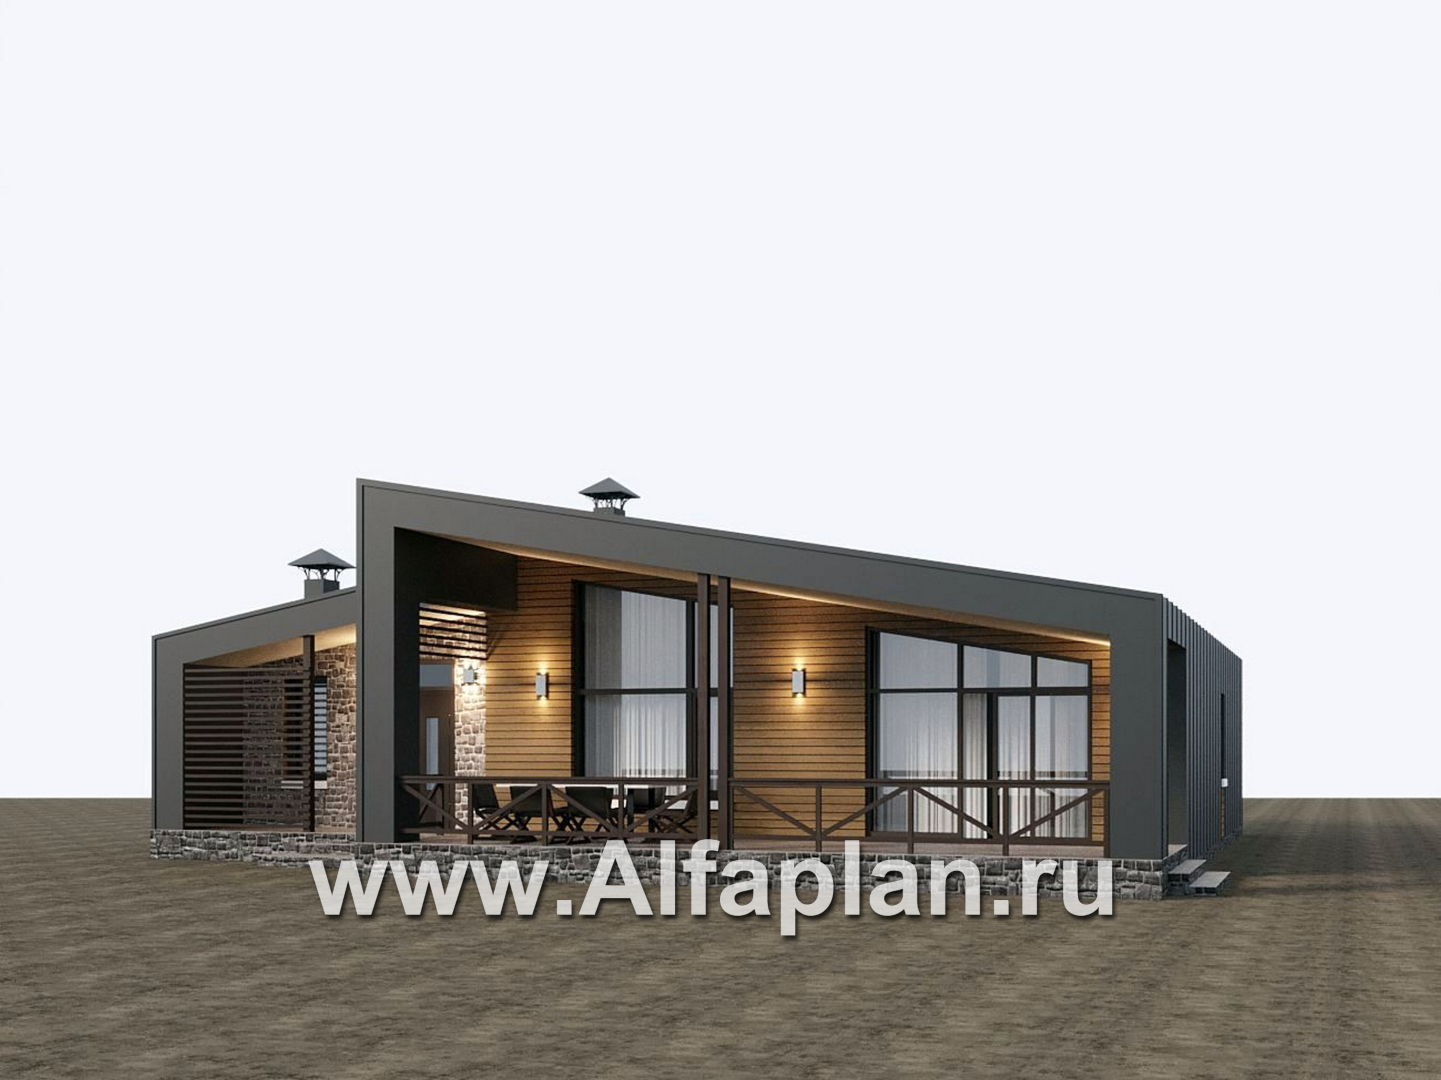 Проекты домов Альфаплан - "Аметист" - экономичный одноэтажный дом в стиле барнхаус - дополнительное изображение №2